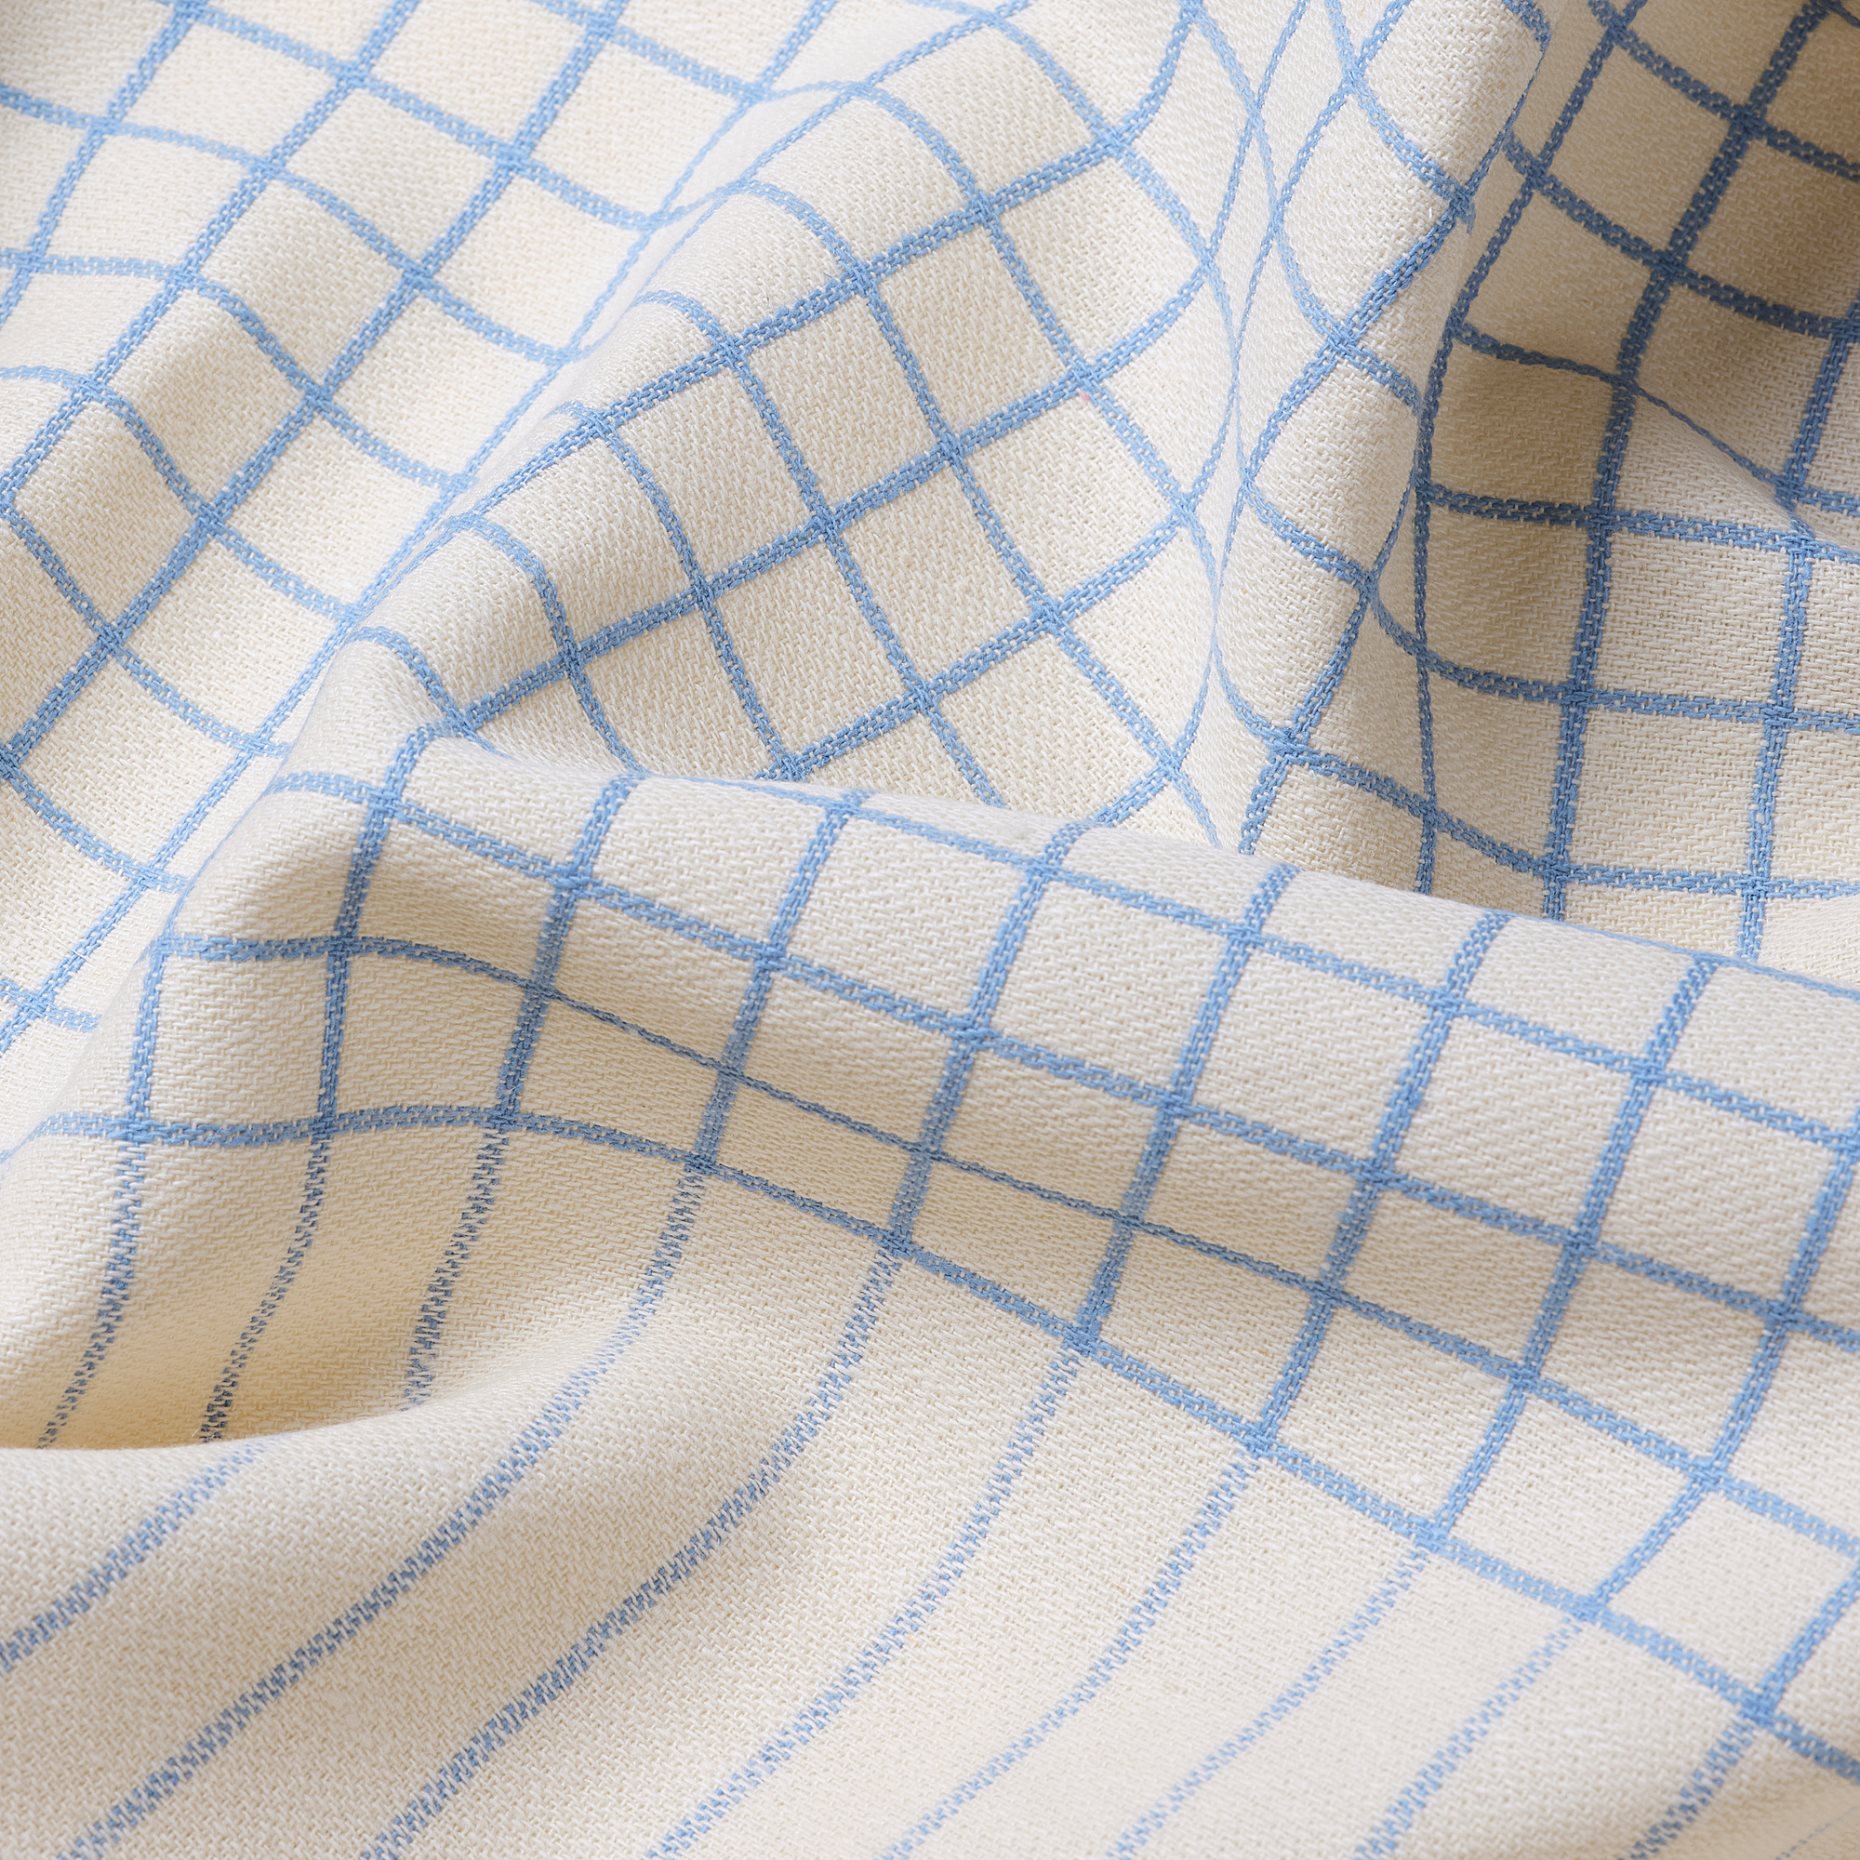 RODKNOT, apron/check pattern, 70x92 cm, 805.648.30